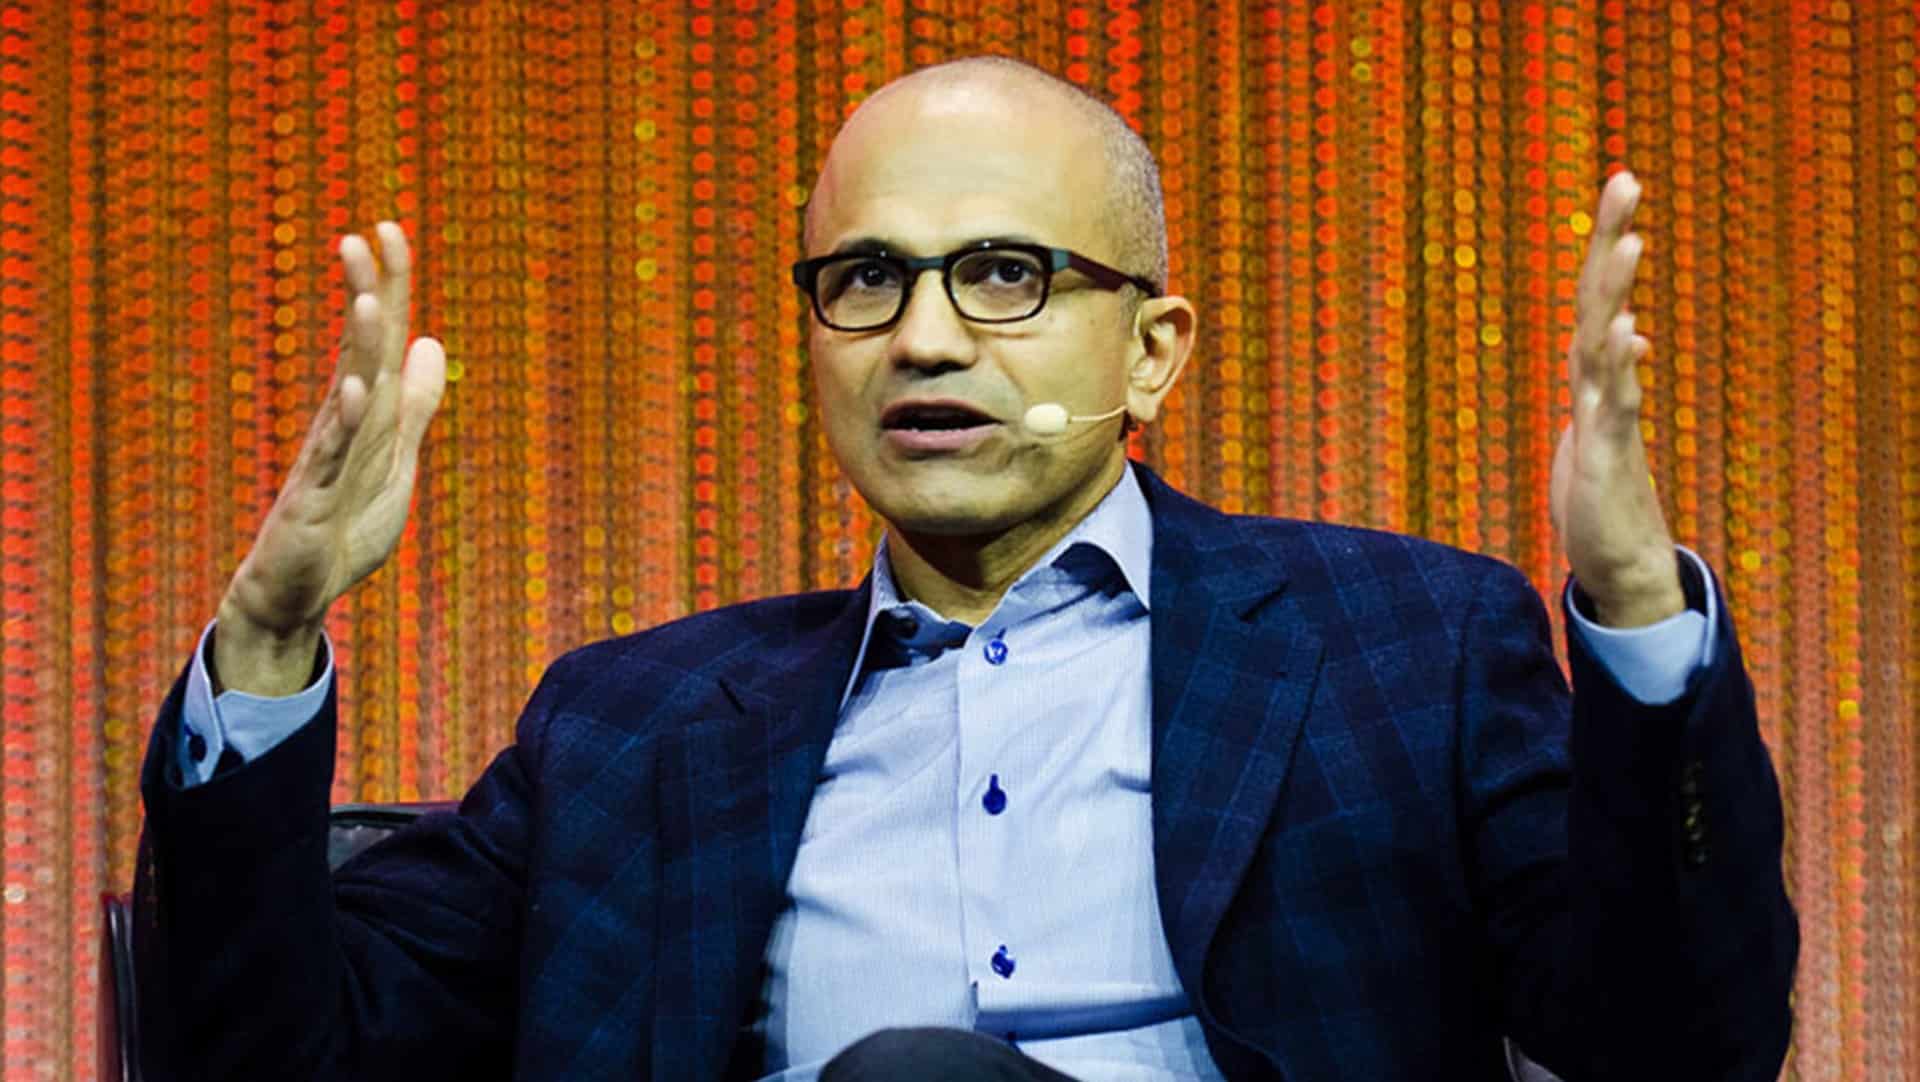 Groww onboards Microsoft CEO Satya Nadella as investor, adviser